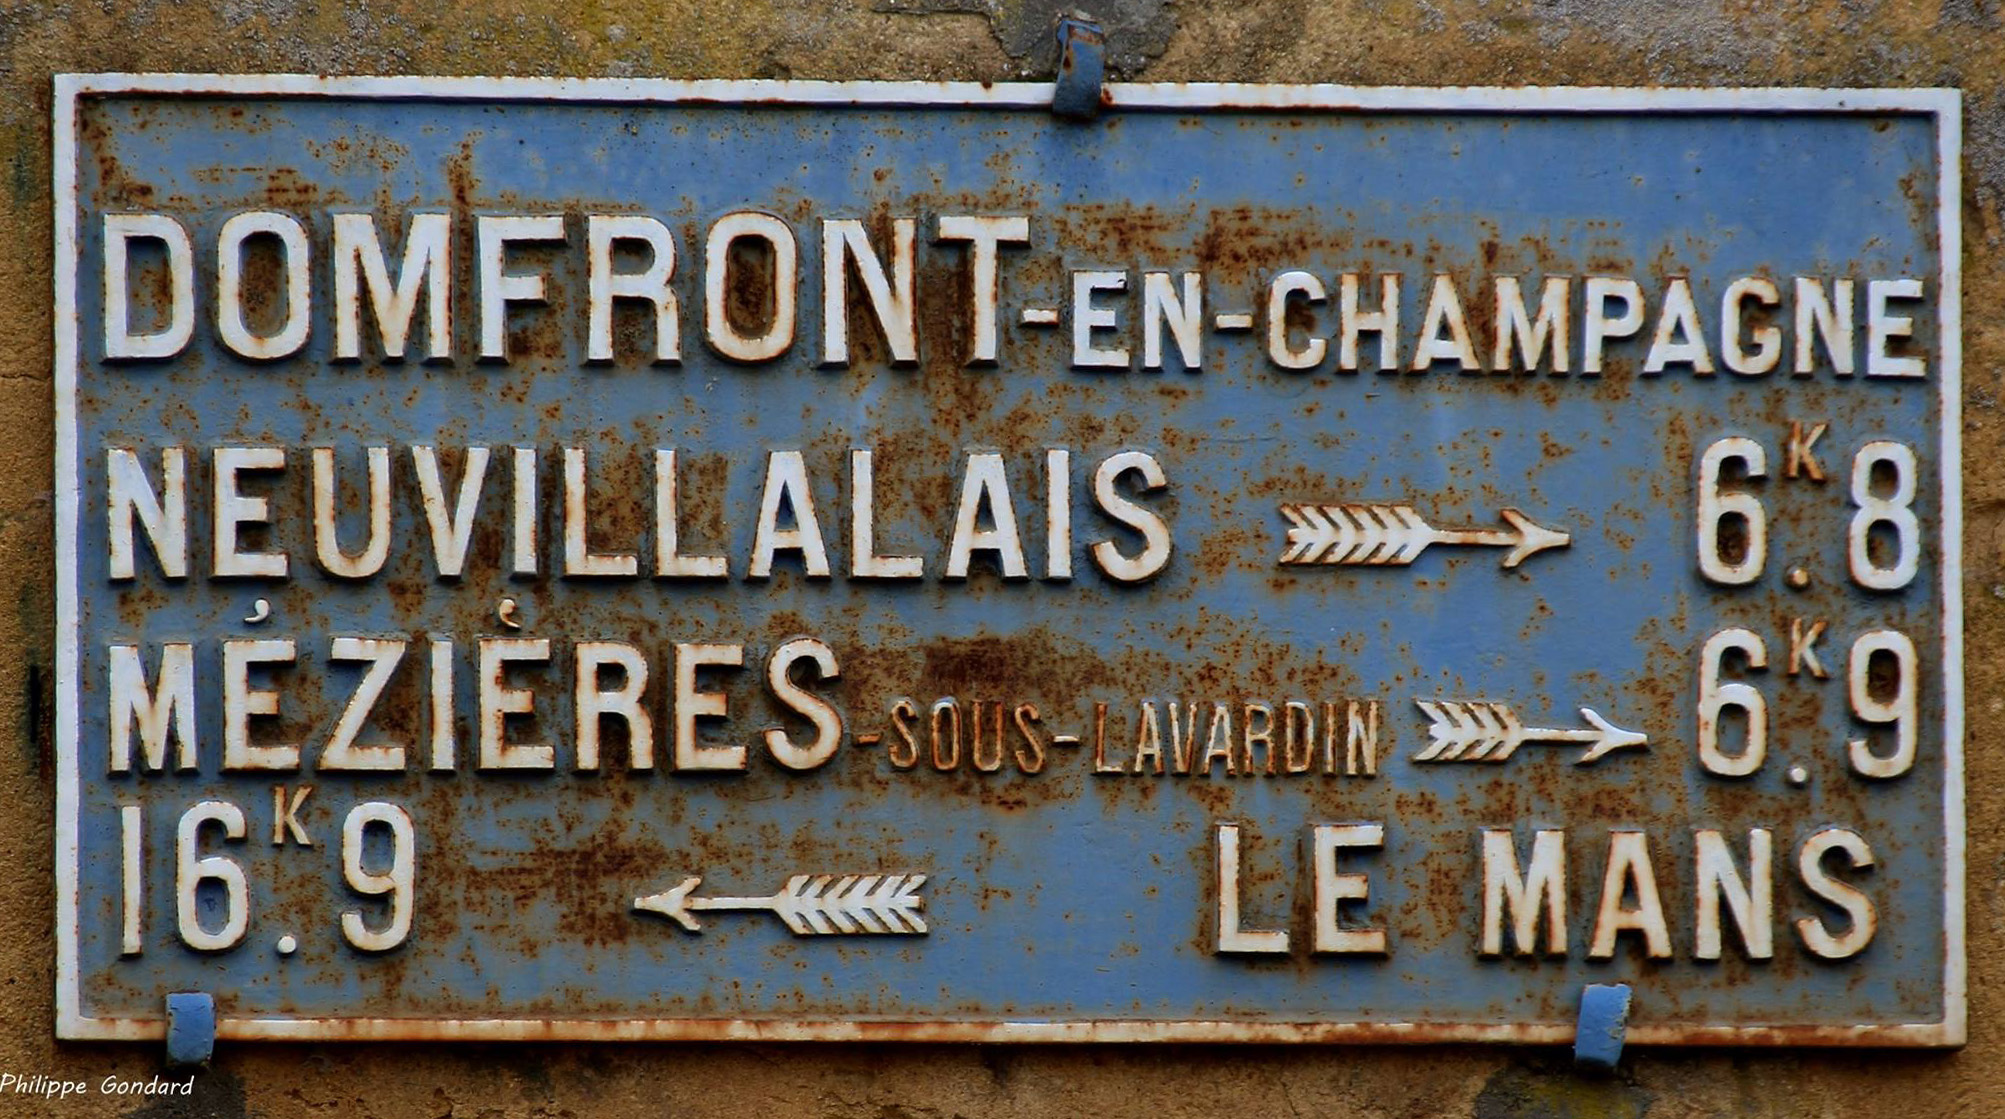 Domfront en Champagne - Plaque de cocher - Neuvillalais - Mézières sous Lavardin - Le Mans (Philippe Gondard)